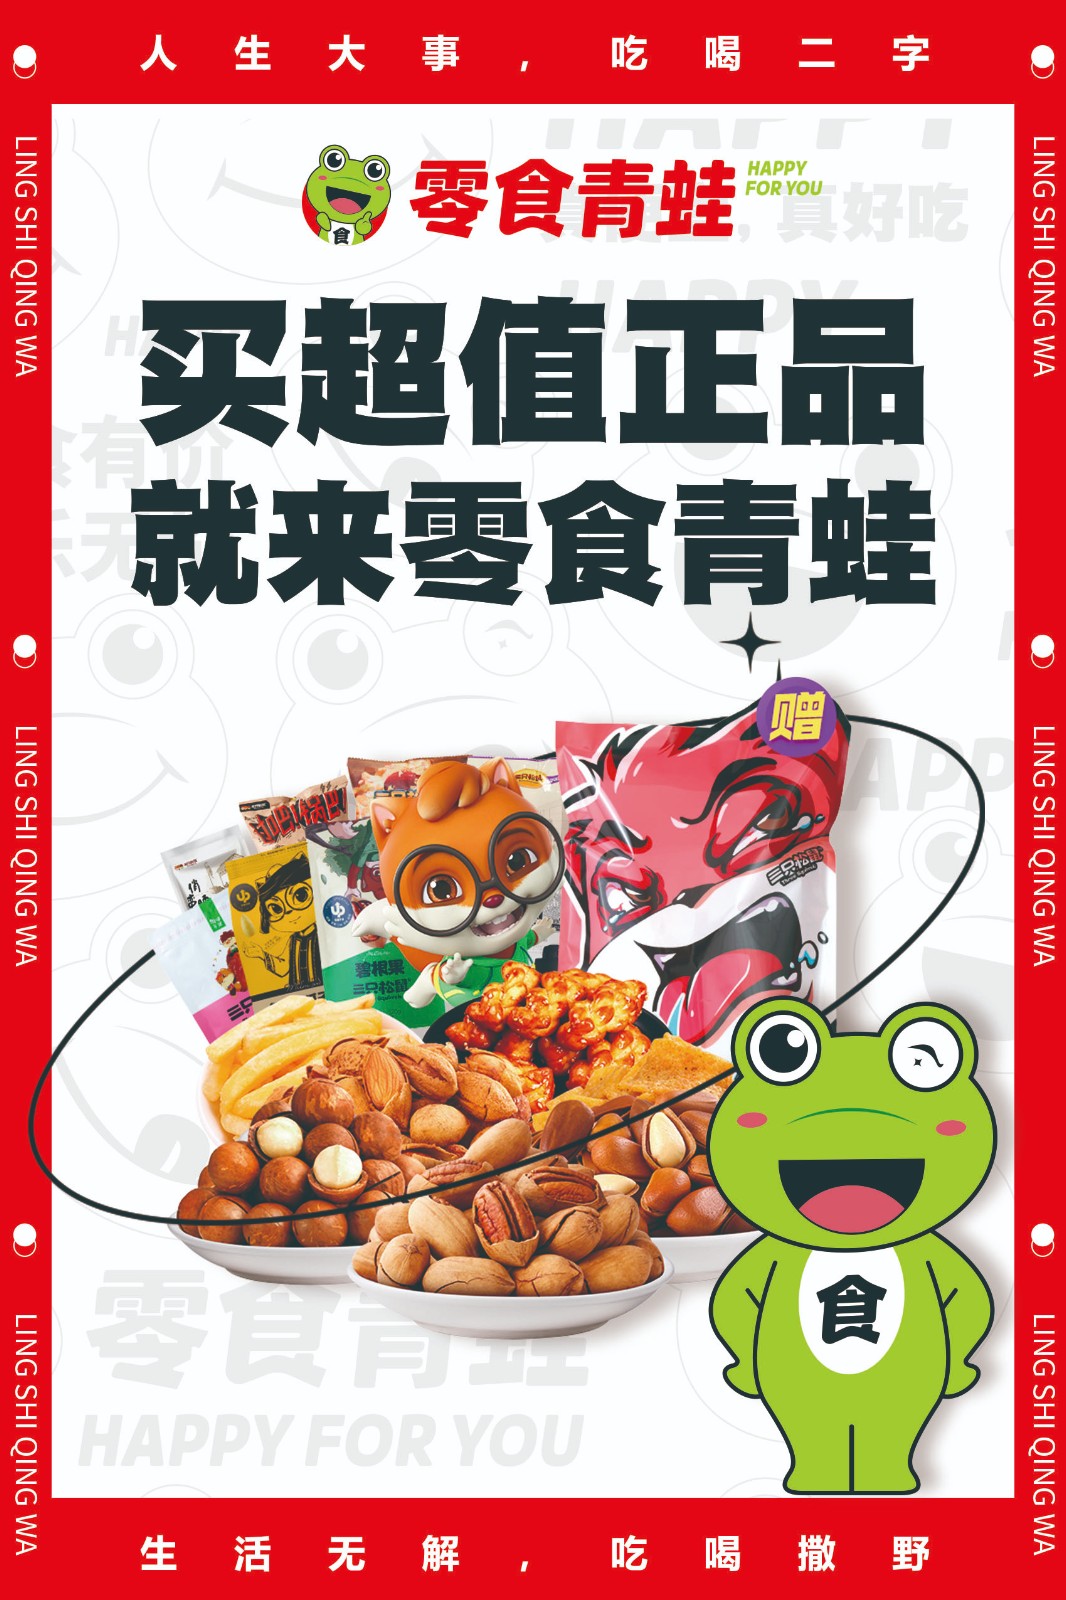 感受快乐的独特滋味——零食青蛙品牌启航！